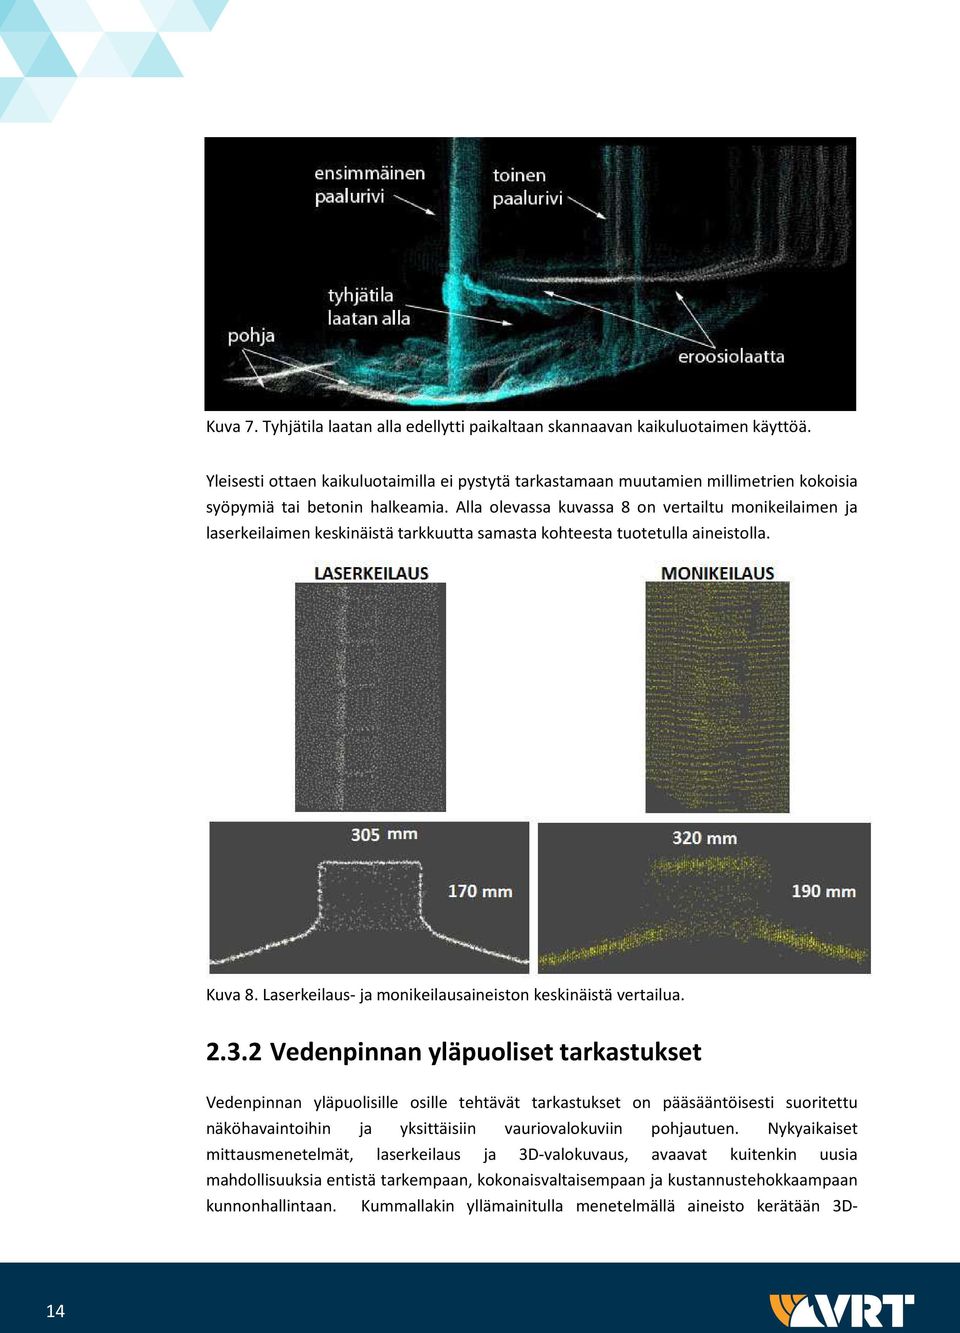 Alla olevassa kuvassa 8 on vertailtu monikeilaimen ja laserkeilaimen keskinäistä tarkkuutta samasta kohteesta tuotetulla aineistolla. Kuva 8.